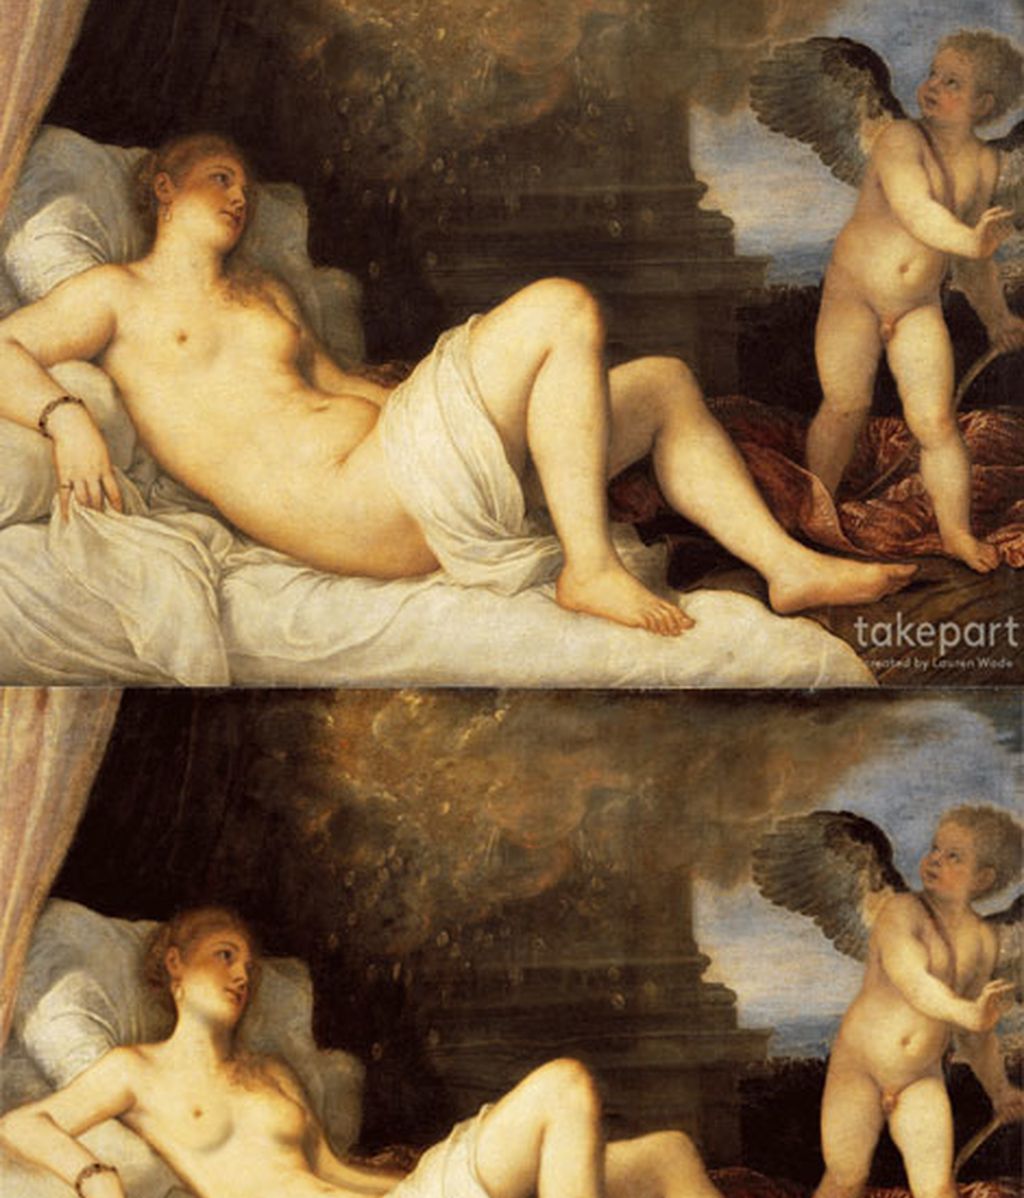 El photoshop llega a las musas desnudas de grandes pintores clásicos